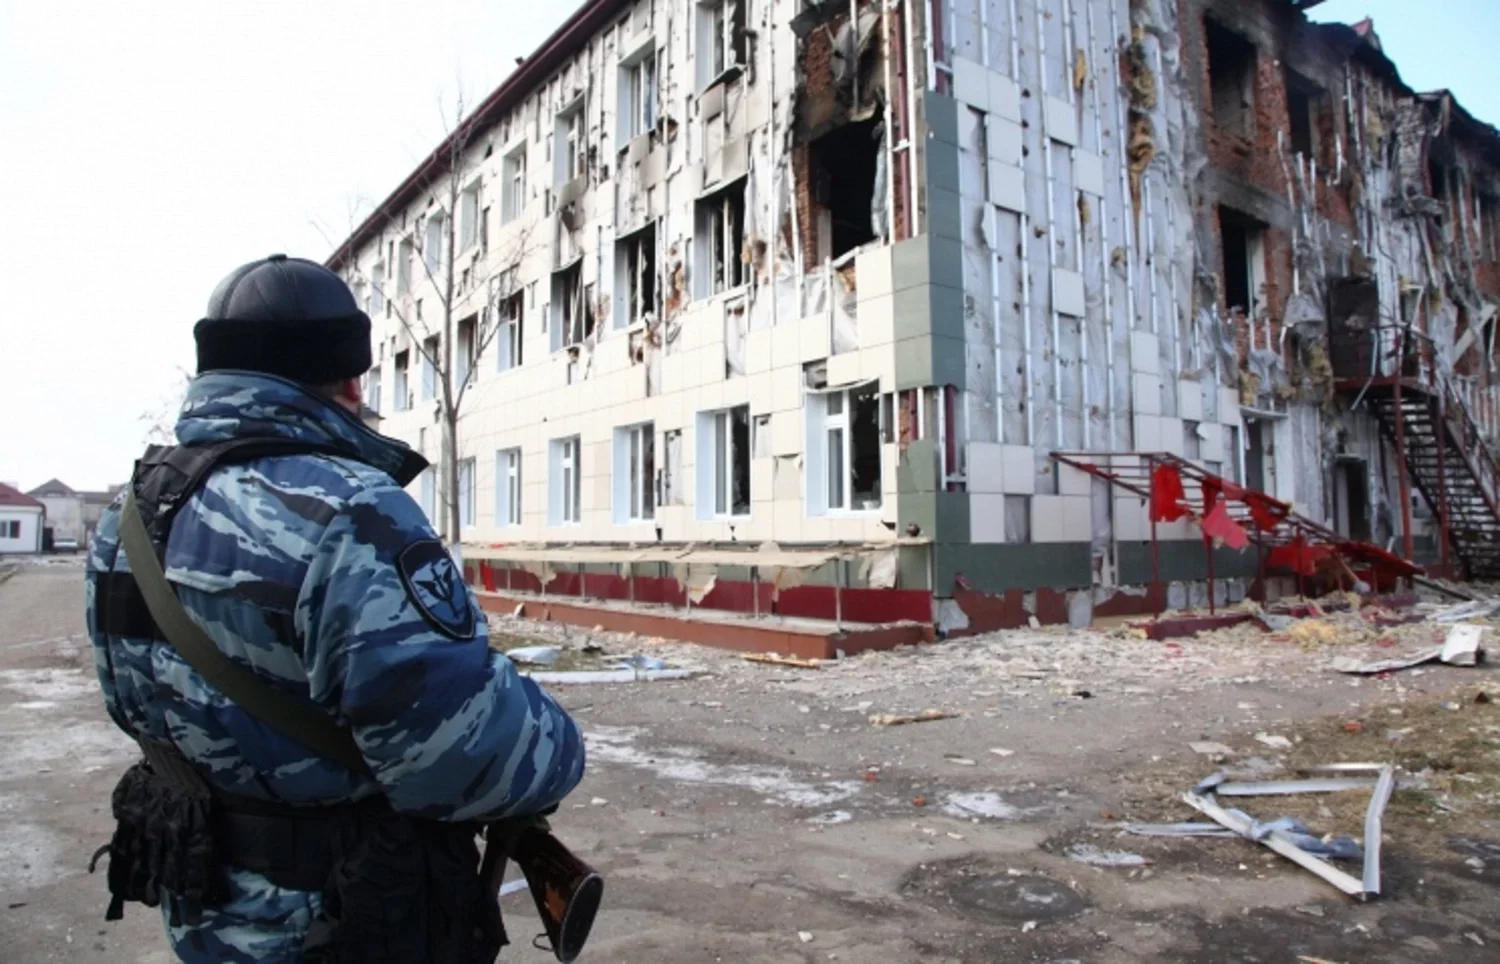 6 декабря 2014 год. Нападение боевиков на Грозный 2014. Нападение на дом печати в Грозном в 2014 году. Дом печати Грозный 2014.